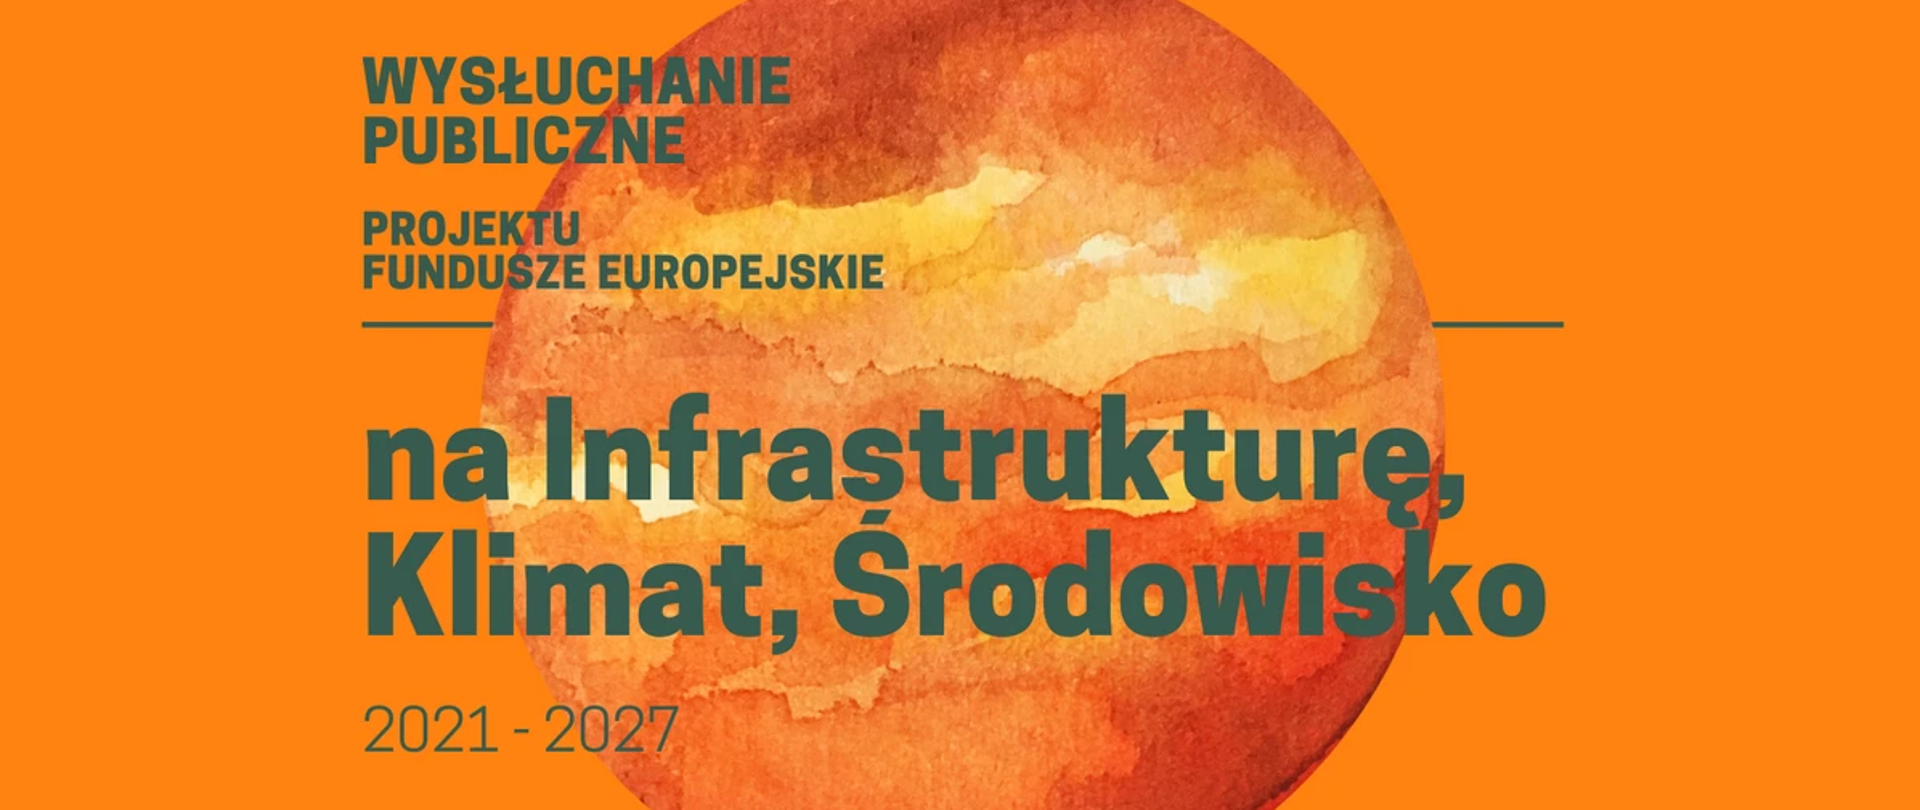 napis na grafice wysłuchanie publiczne projektu Fundusze Europejskie na Infrastrukturę, Klimat, Środowisko 2021-2027